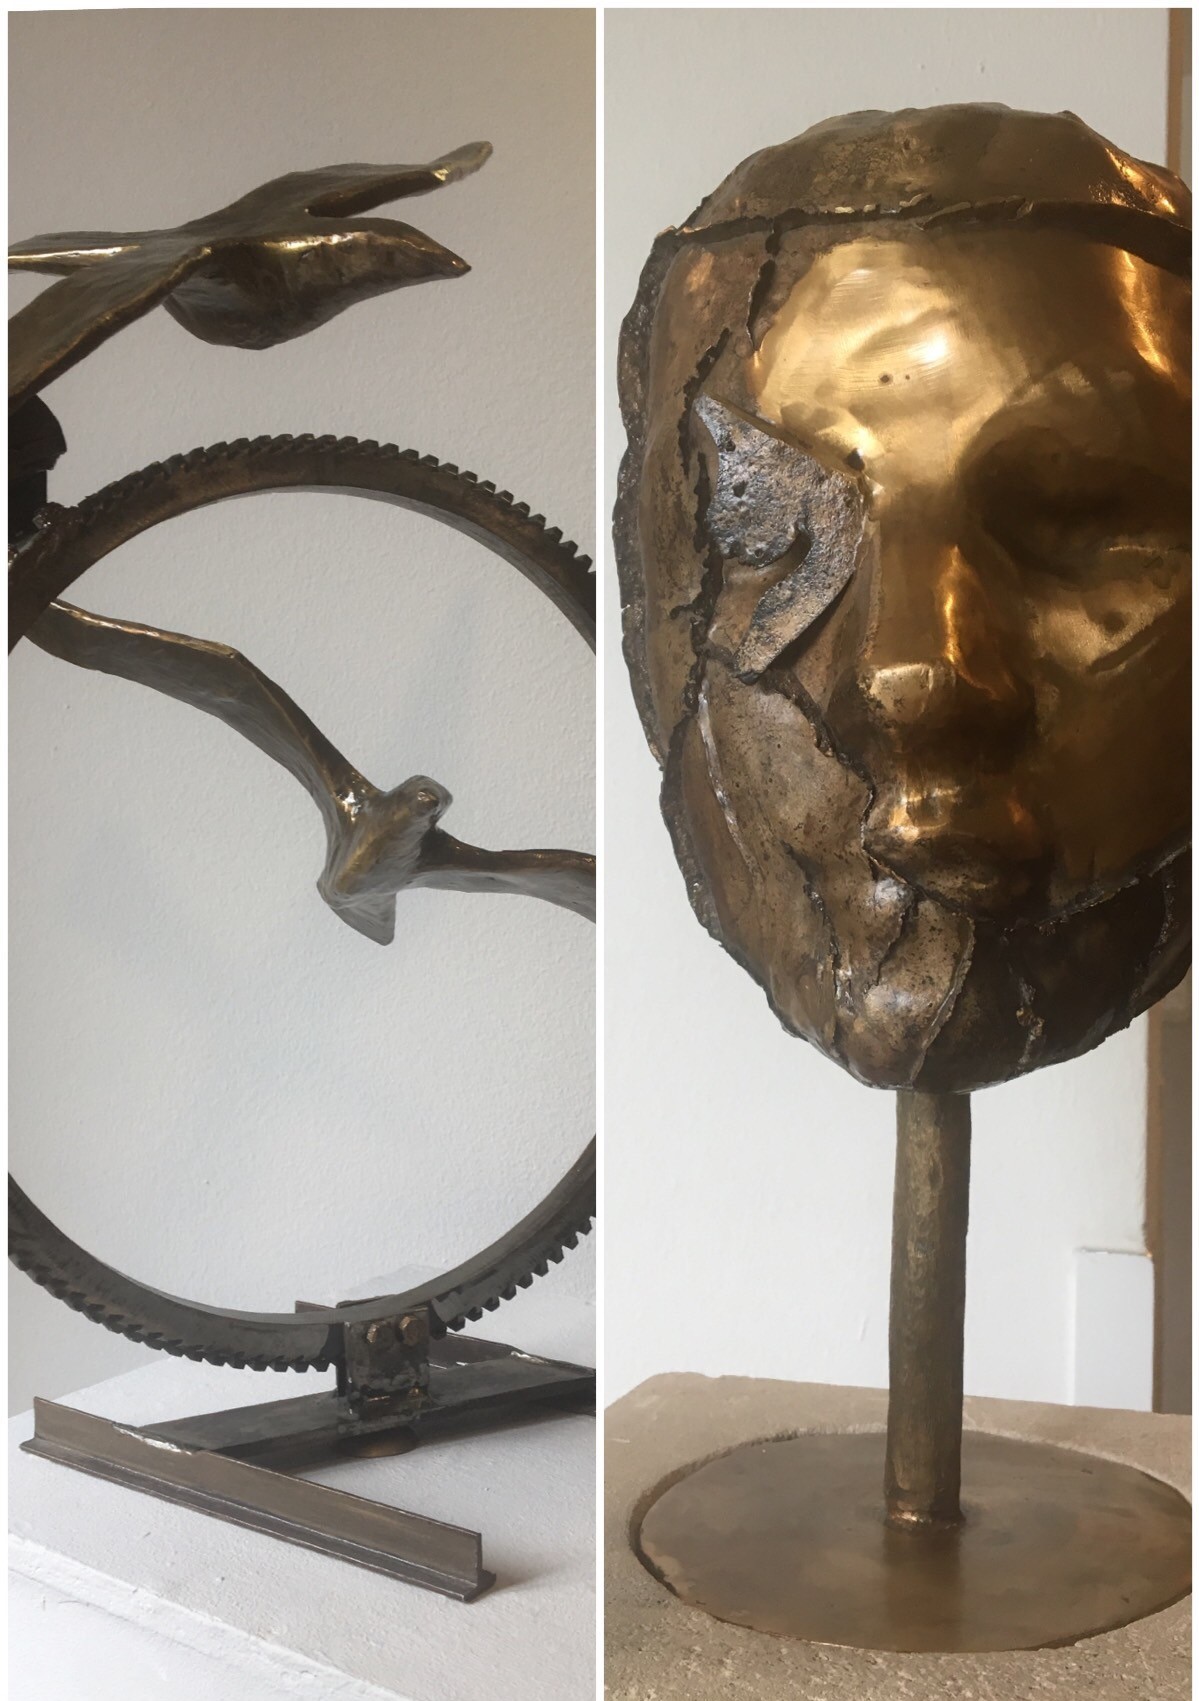 Einladung zur Vernissage Ausstellung Bronzeskulpturen - auf dem Bild sind zwei der Skulpturen zu sehen